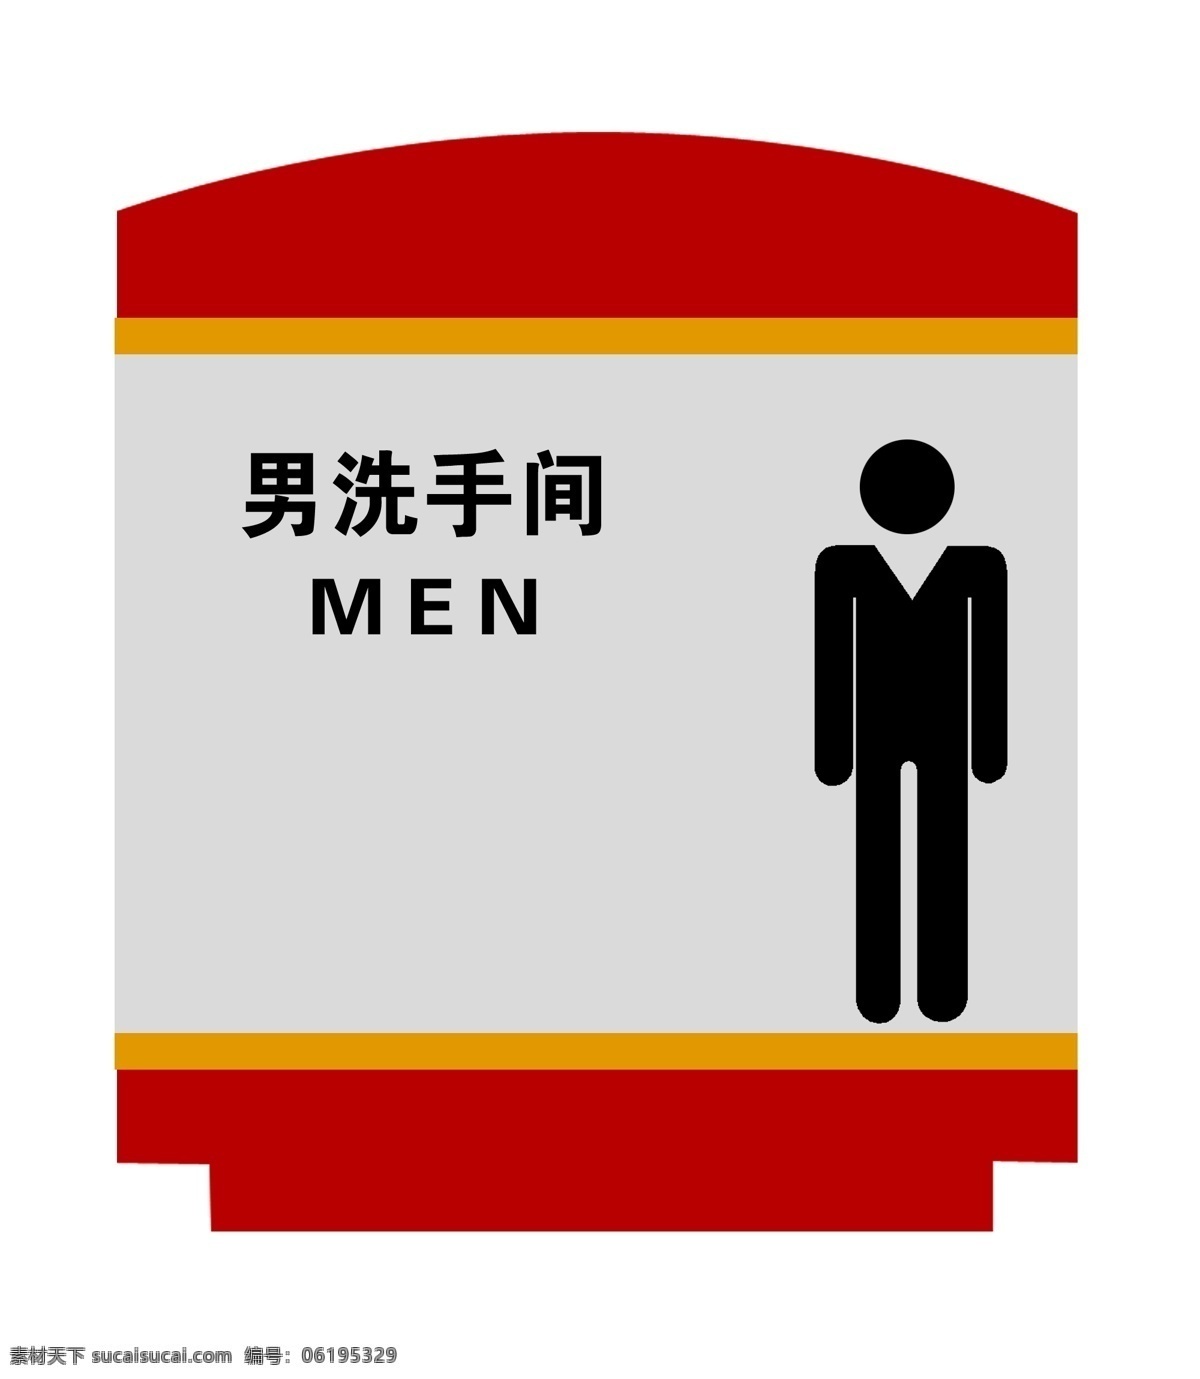 男洗手间 洗手间 男 卫生间 wc man 厕所 洗手间标志 双色板组合 分层 源文件